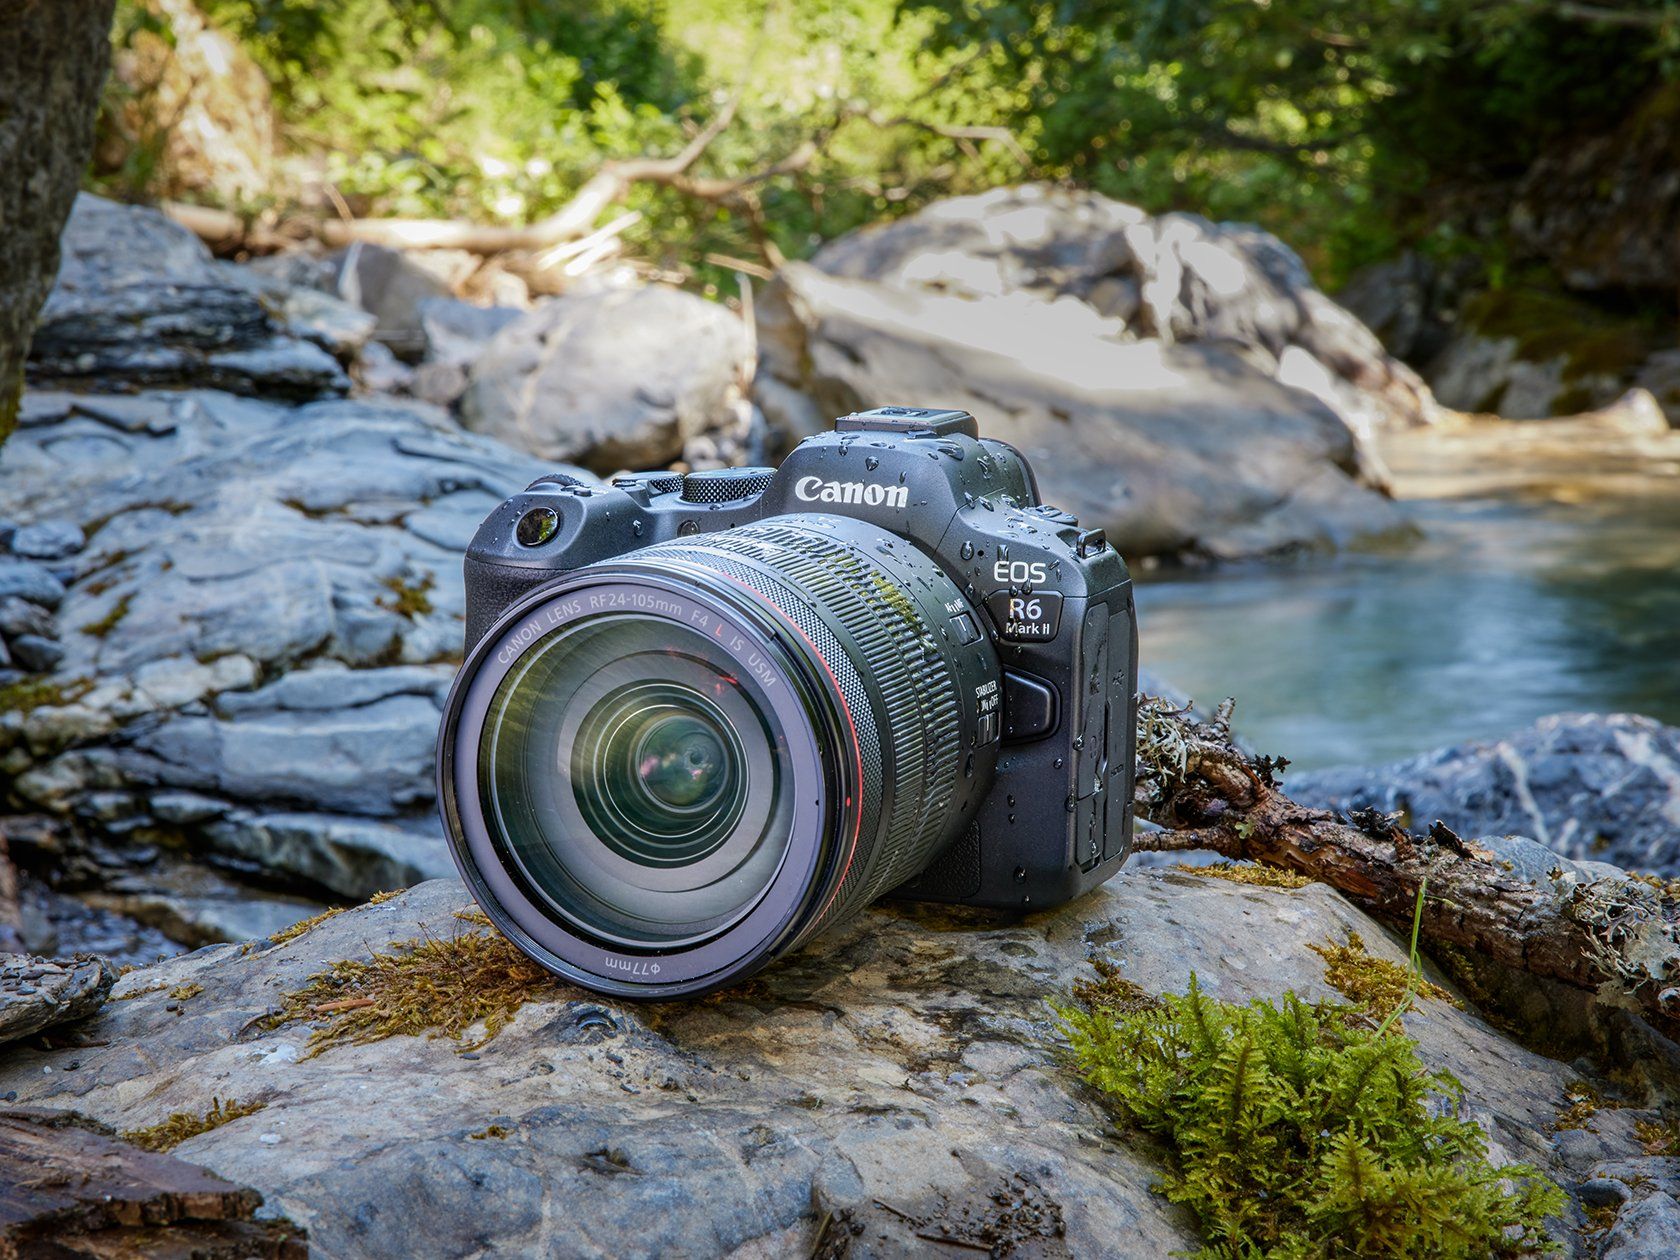 Canon EOS R6 Mark II spiegellose Kamera und RF 24-105mm F4-7.1 IS STM  Objektiv in WLAN-Kameras — Canon Deutschland Shop